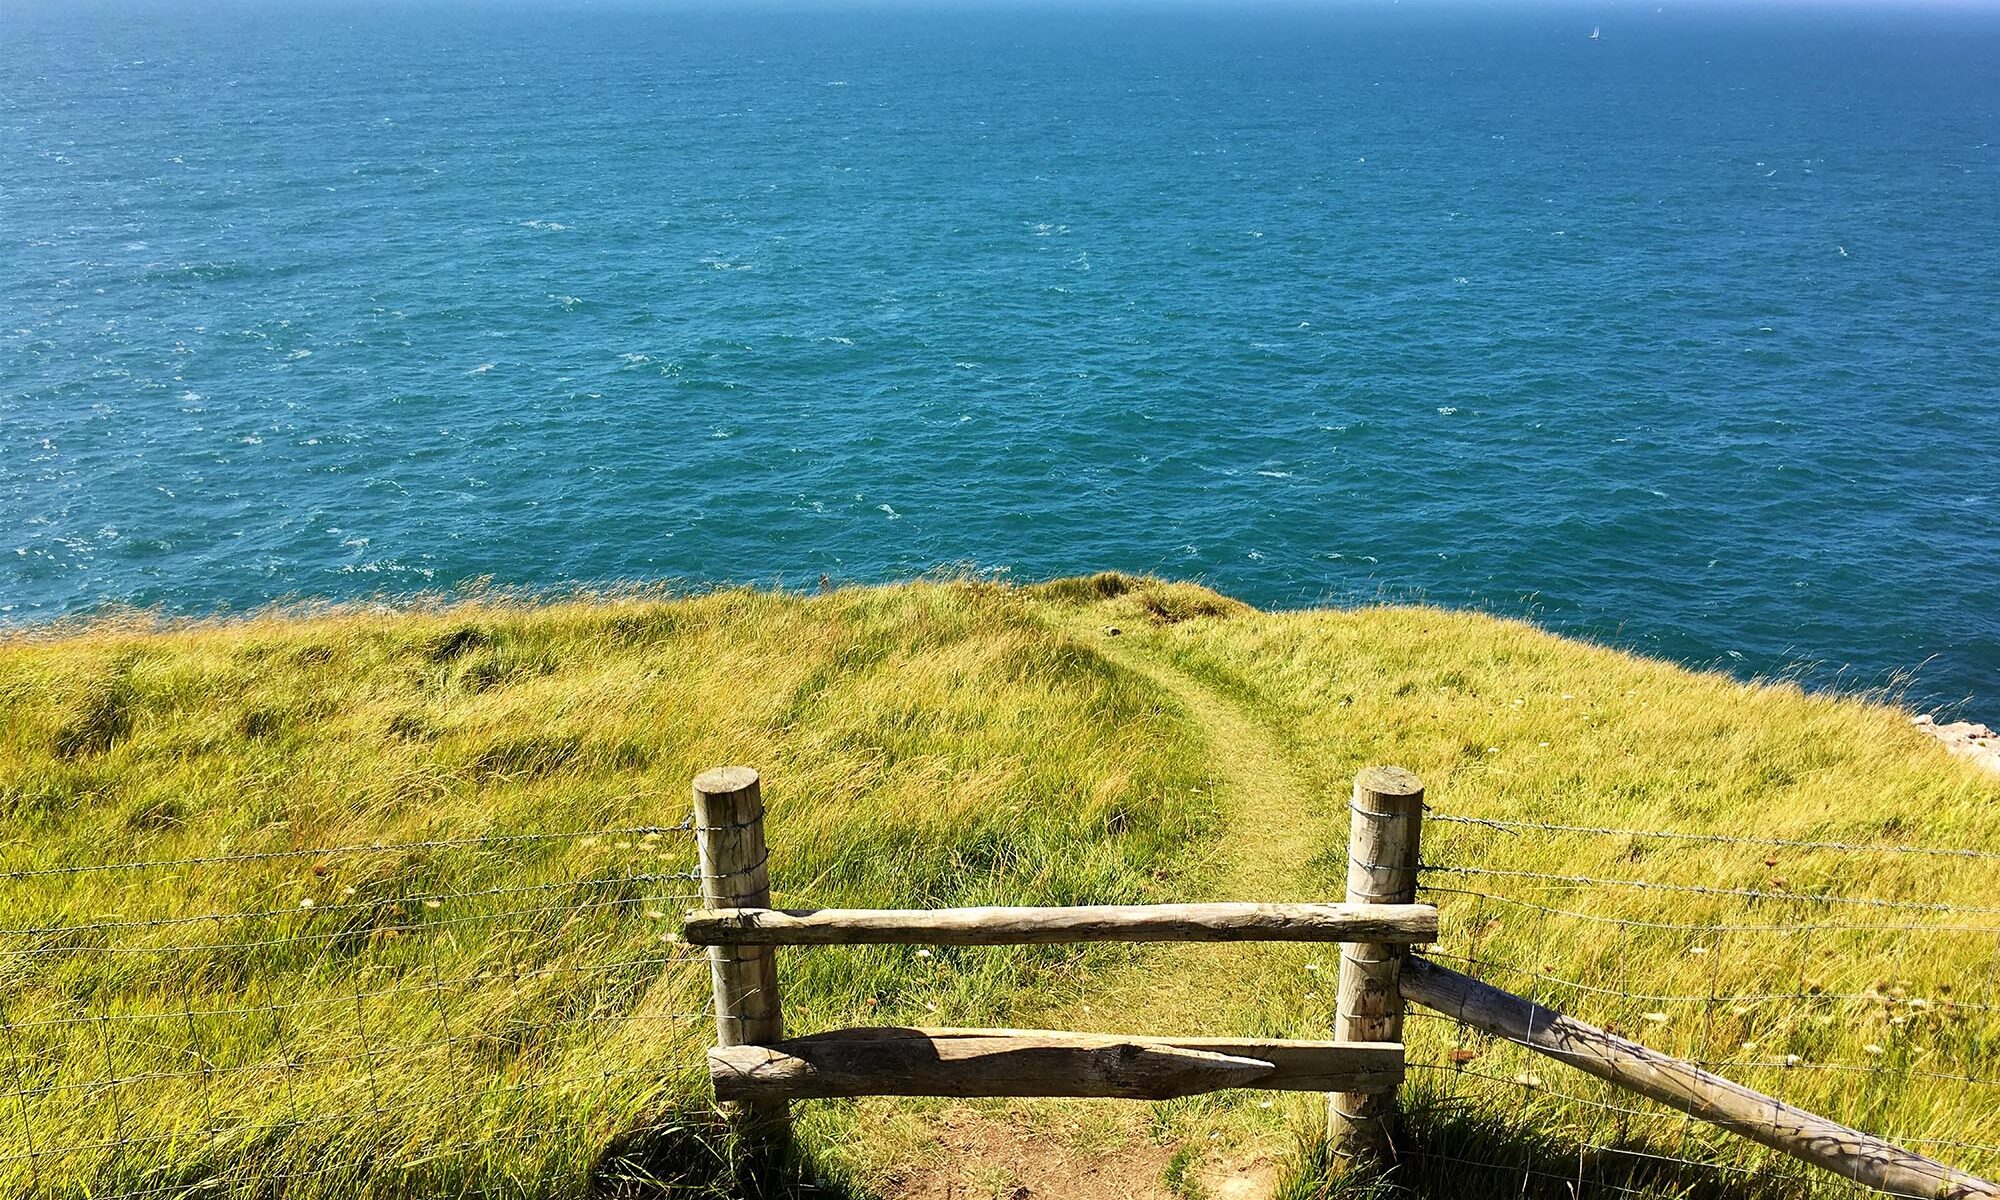 Where the road runs out - path to sea near Dunedin, NZ